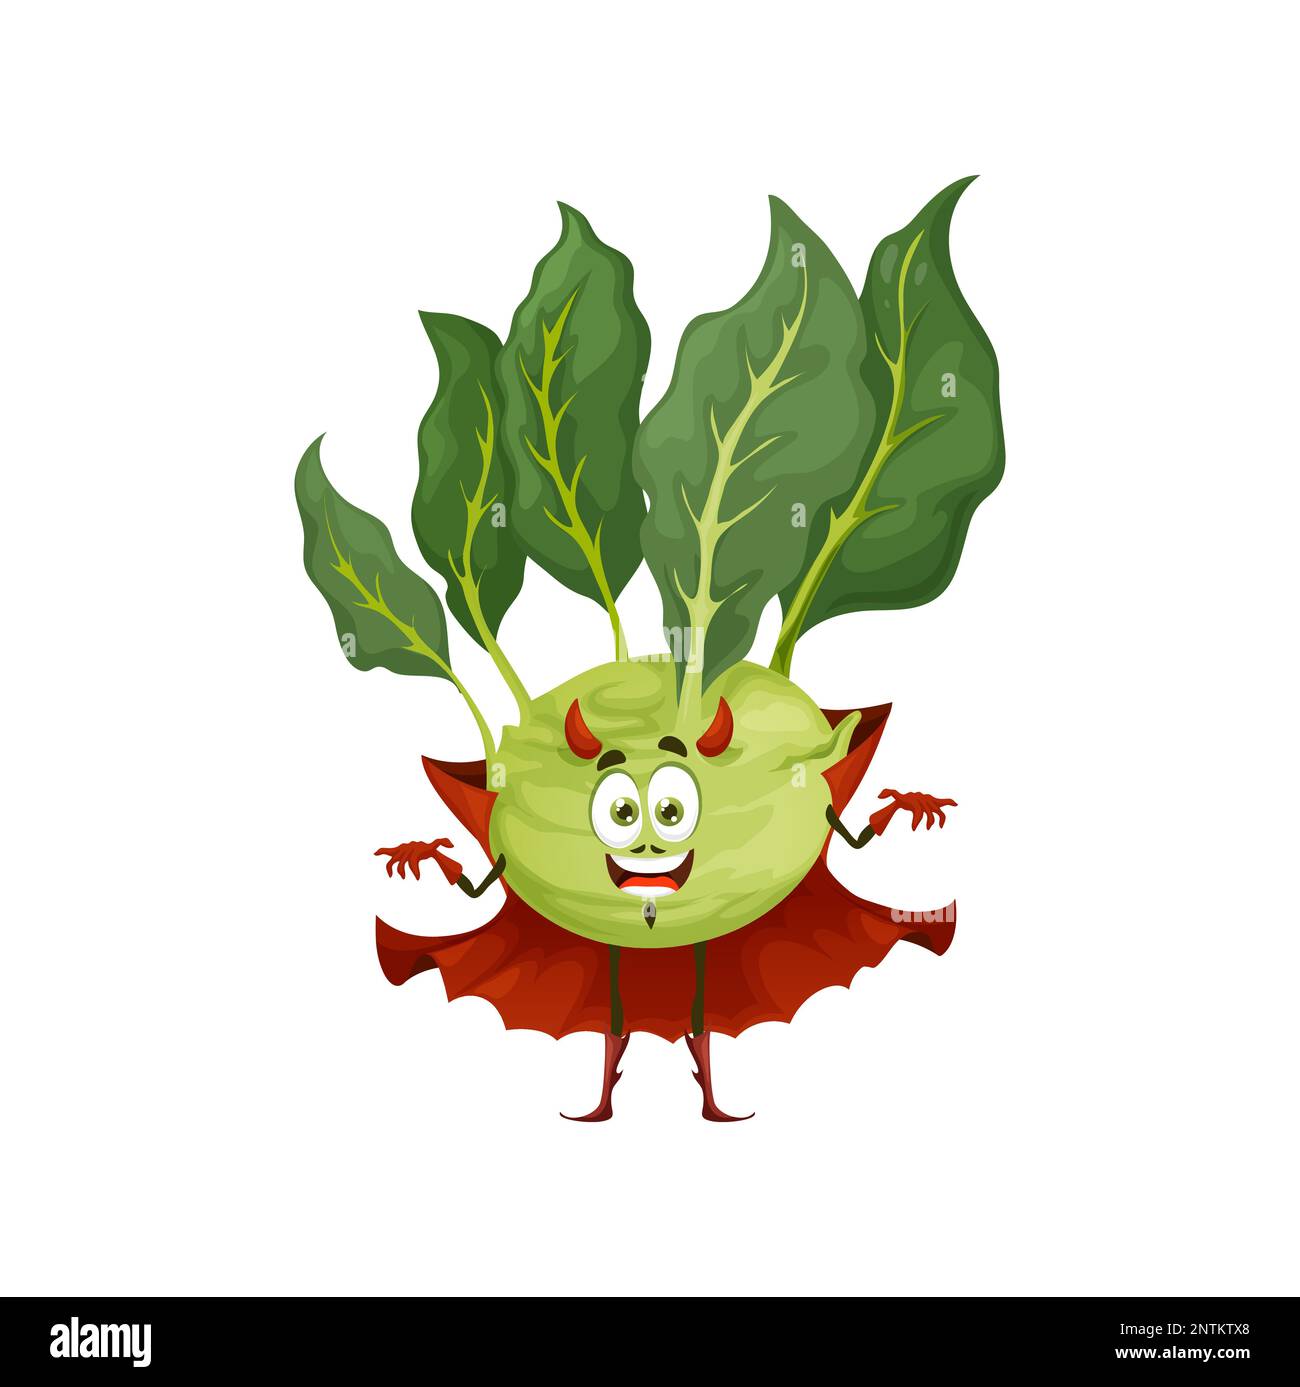 Caricature kohlrabi Halloween personnage diable. Vecteur isolé comique sain veggies personnage avec des cornes dans le costume sinistre de vacances de Satan. Le Beelzebub humoristique au cap, qui repart pour les fêtes de fin d'année Illustration de Vecteur